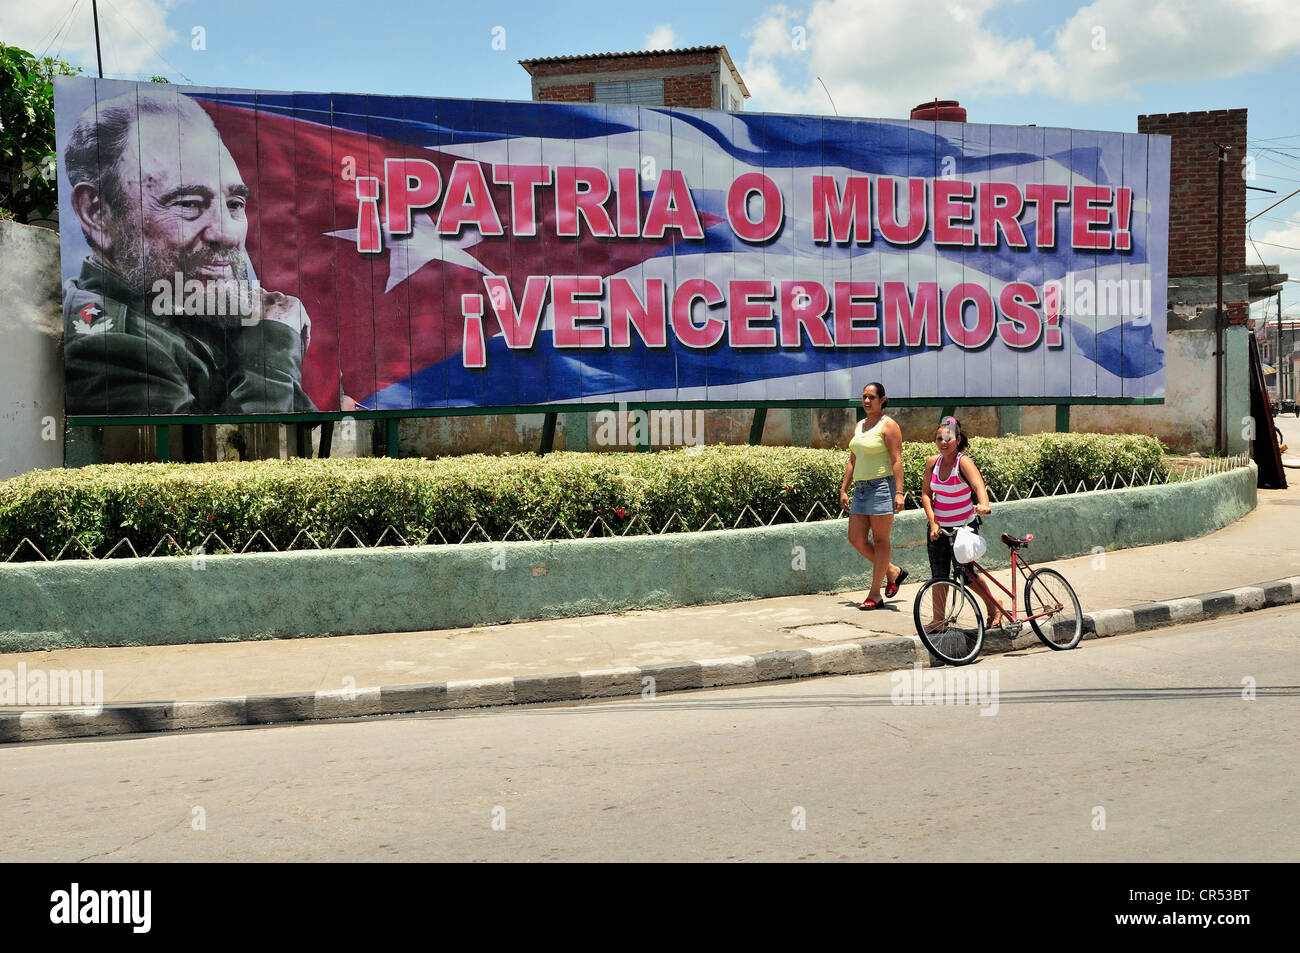 Inscrivez-vous à la propagande révolutionnaire, Patria o muerte, la patrie ou la mort, dans le centre historique de la ville de Bayamo, Cuba, Caraïbes Banque D'Images